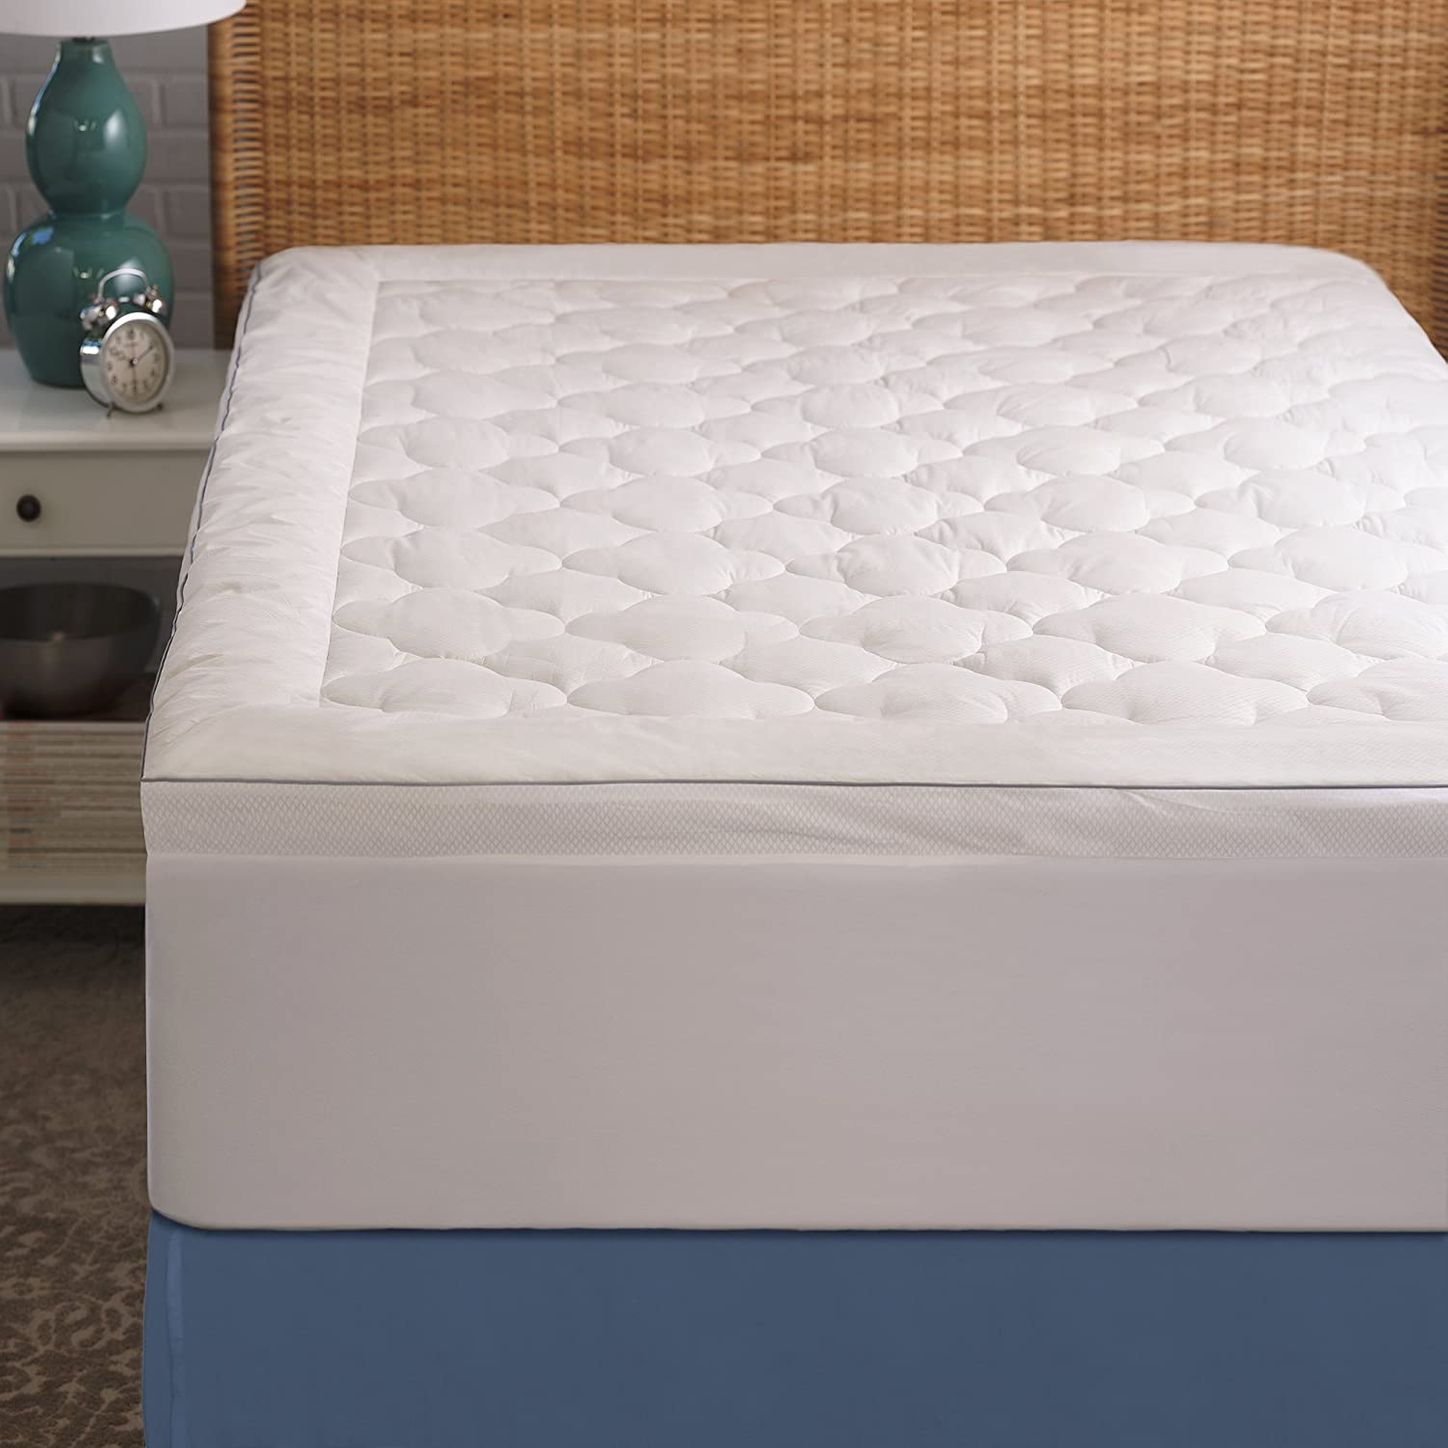 sleep innovations marley 10-inch cooling gel memory foam mattress model m-14gelsw1rlc